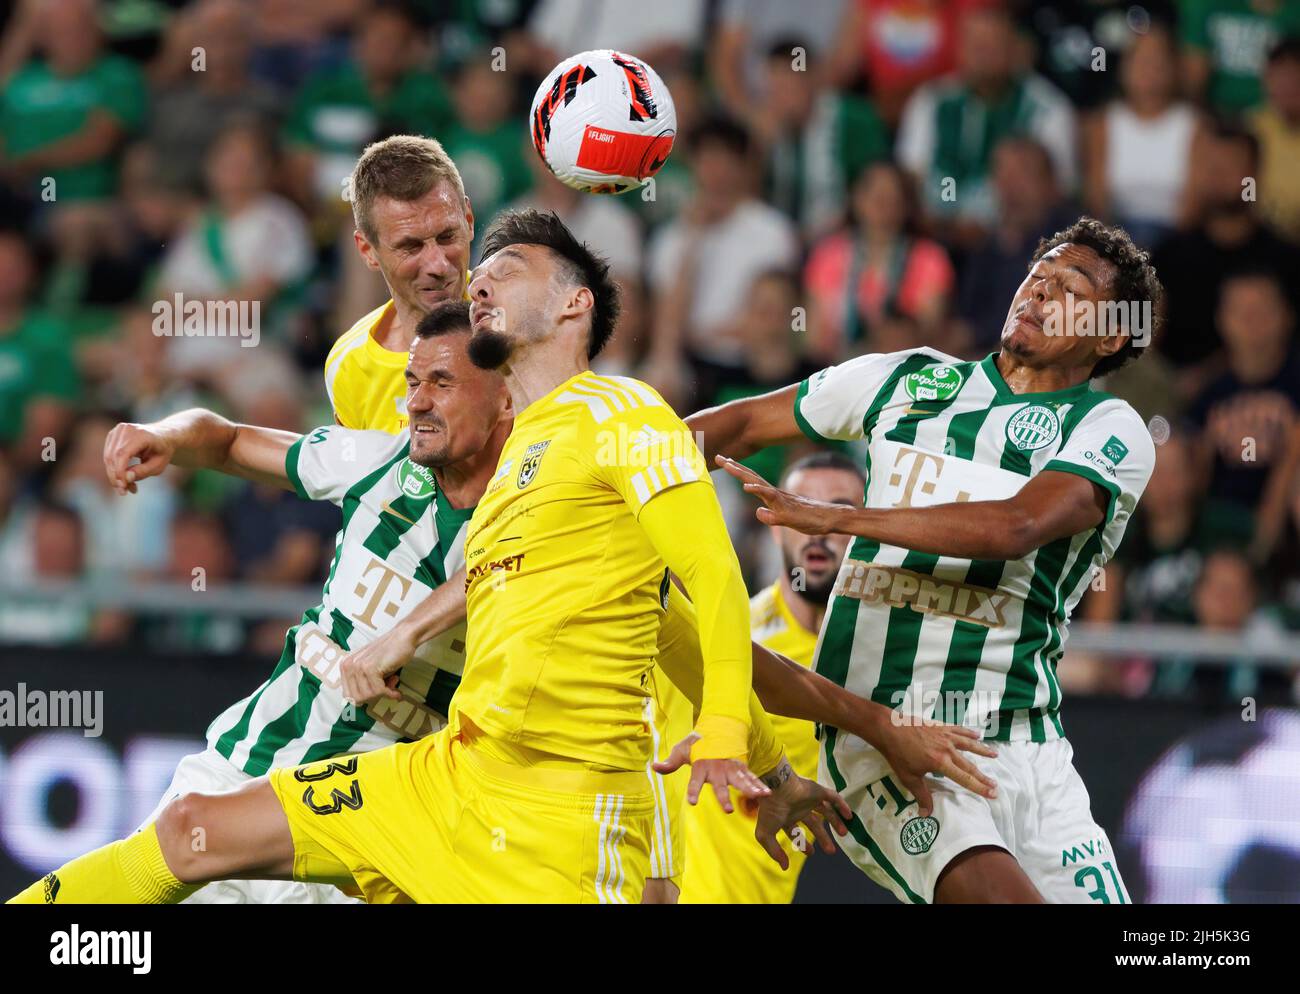 Zarko Tomasevic of FC Tobol challenges Samy Mmaee of Ferencvarosi TC  News Photo - Getty Images